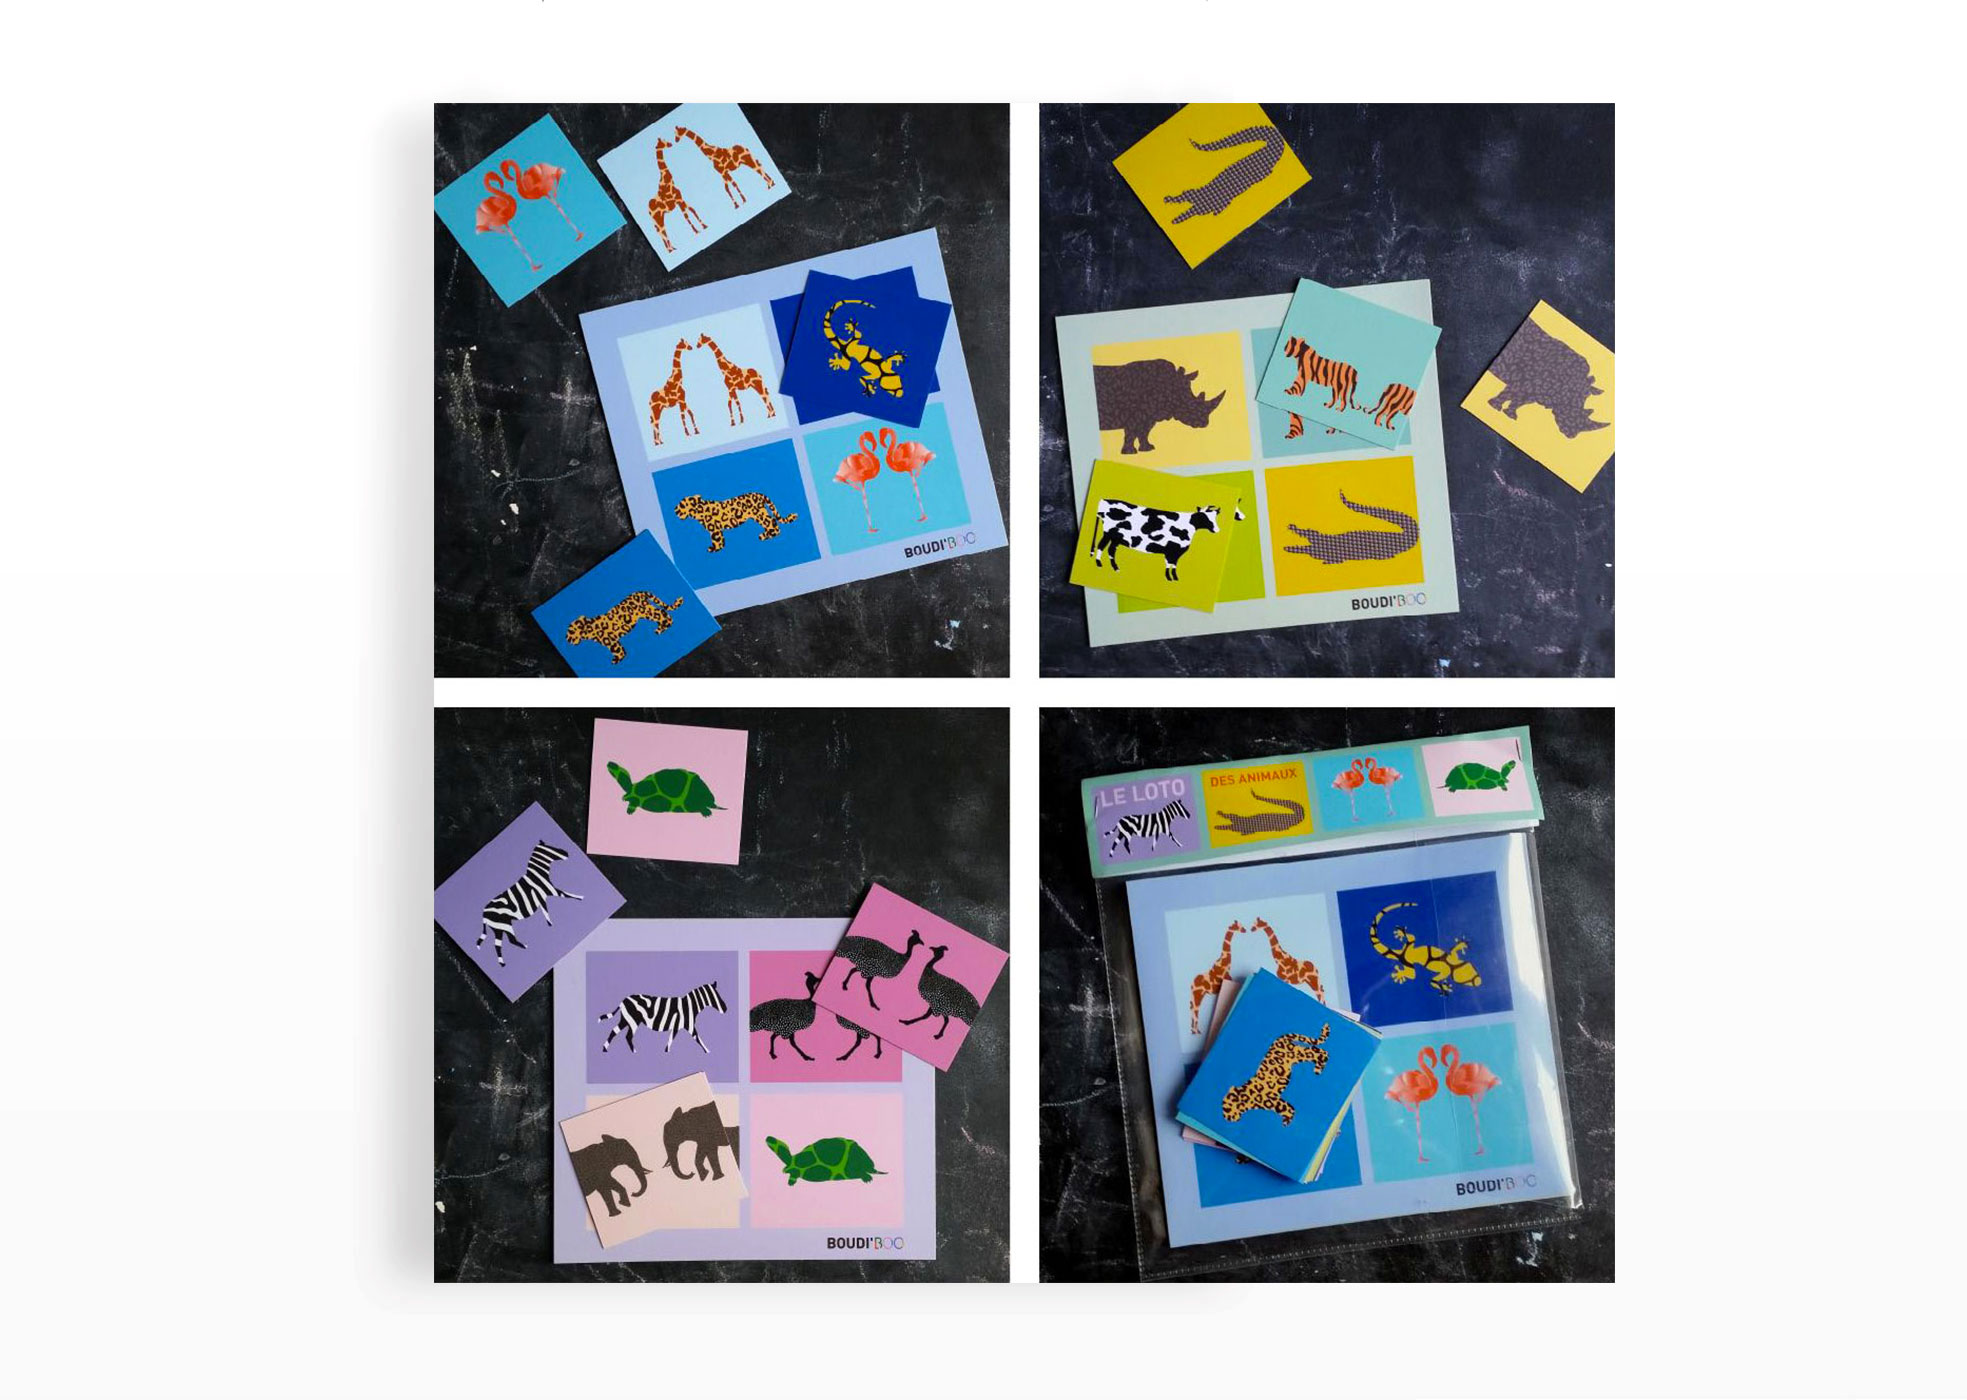 Un jeu pour faire découvrir les animaux et les couleurs aux petits bouts
Contient 3 planches et 12 cartes